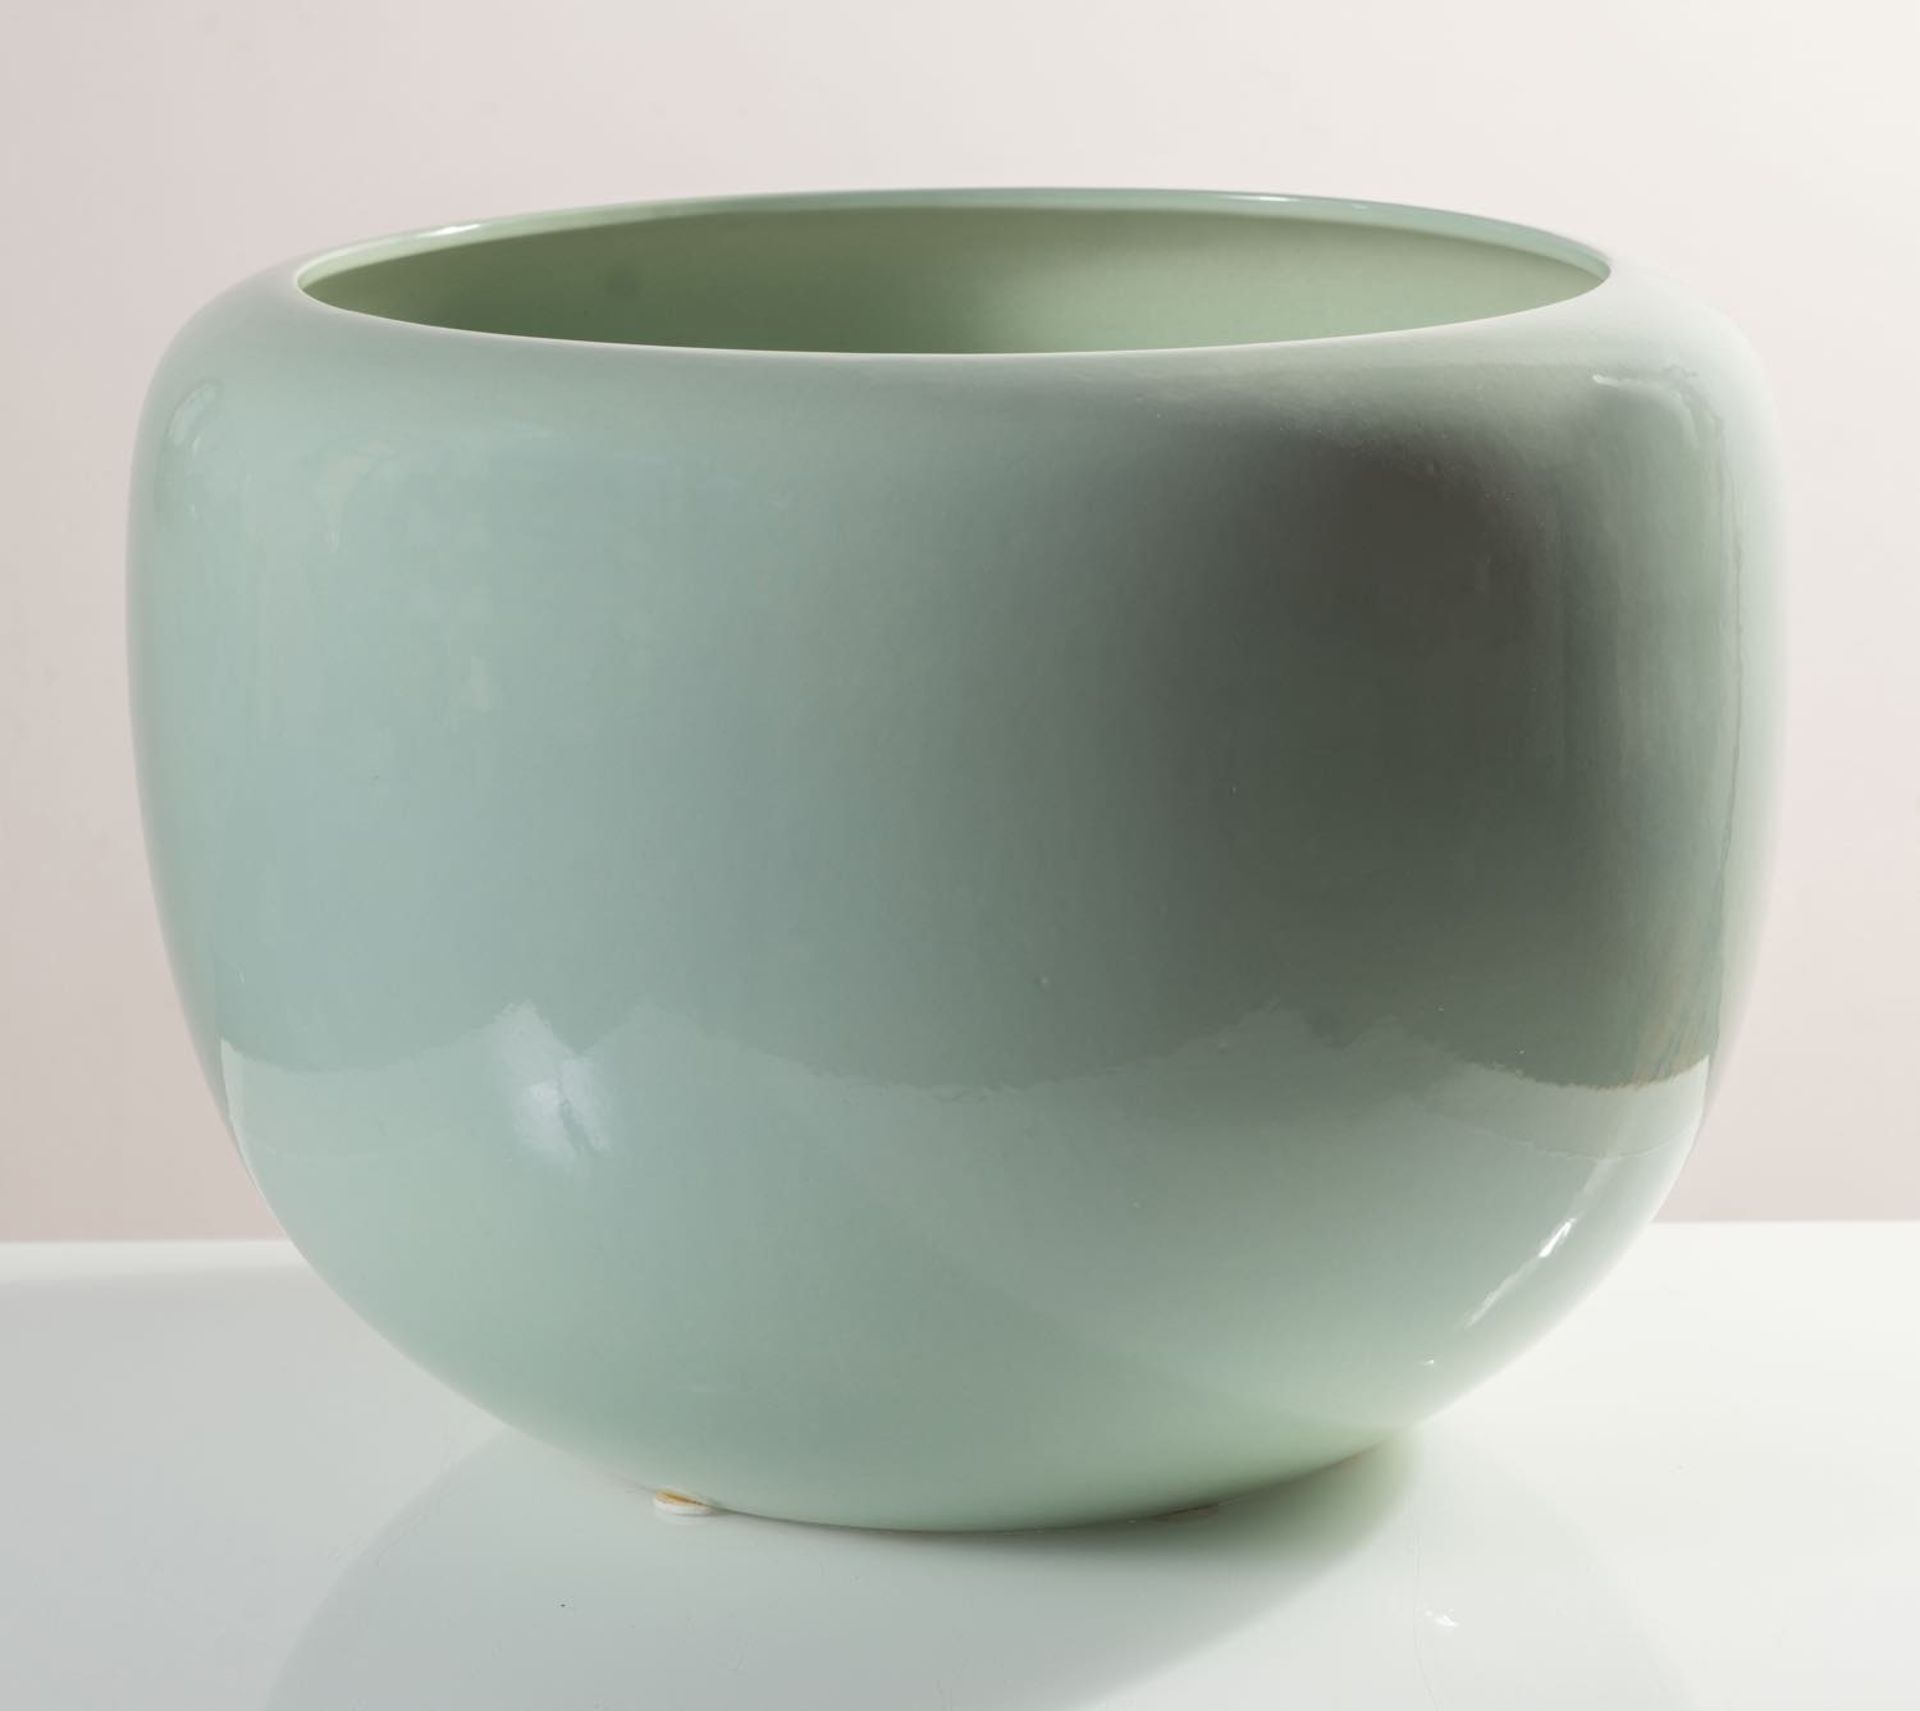 Grande cachepot bombato in ceramica verde, Anni ‘70.H cm 38 - diametro max cm 49